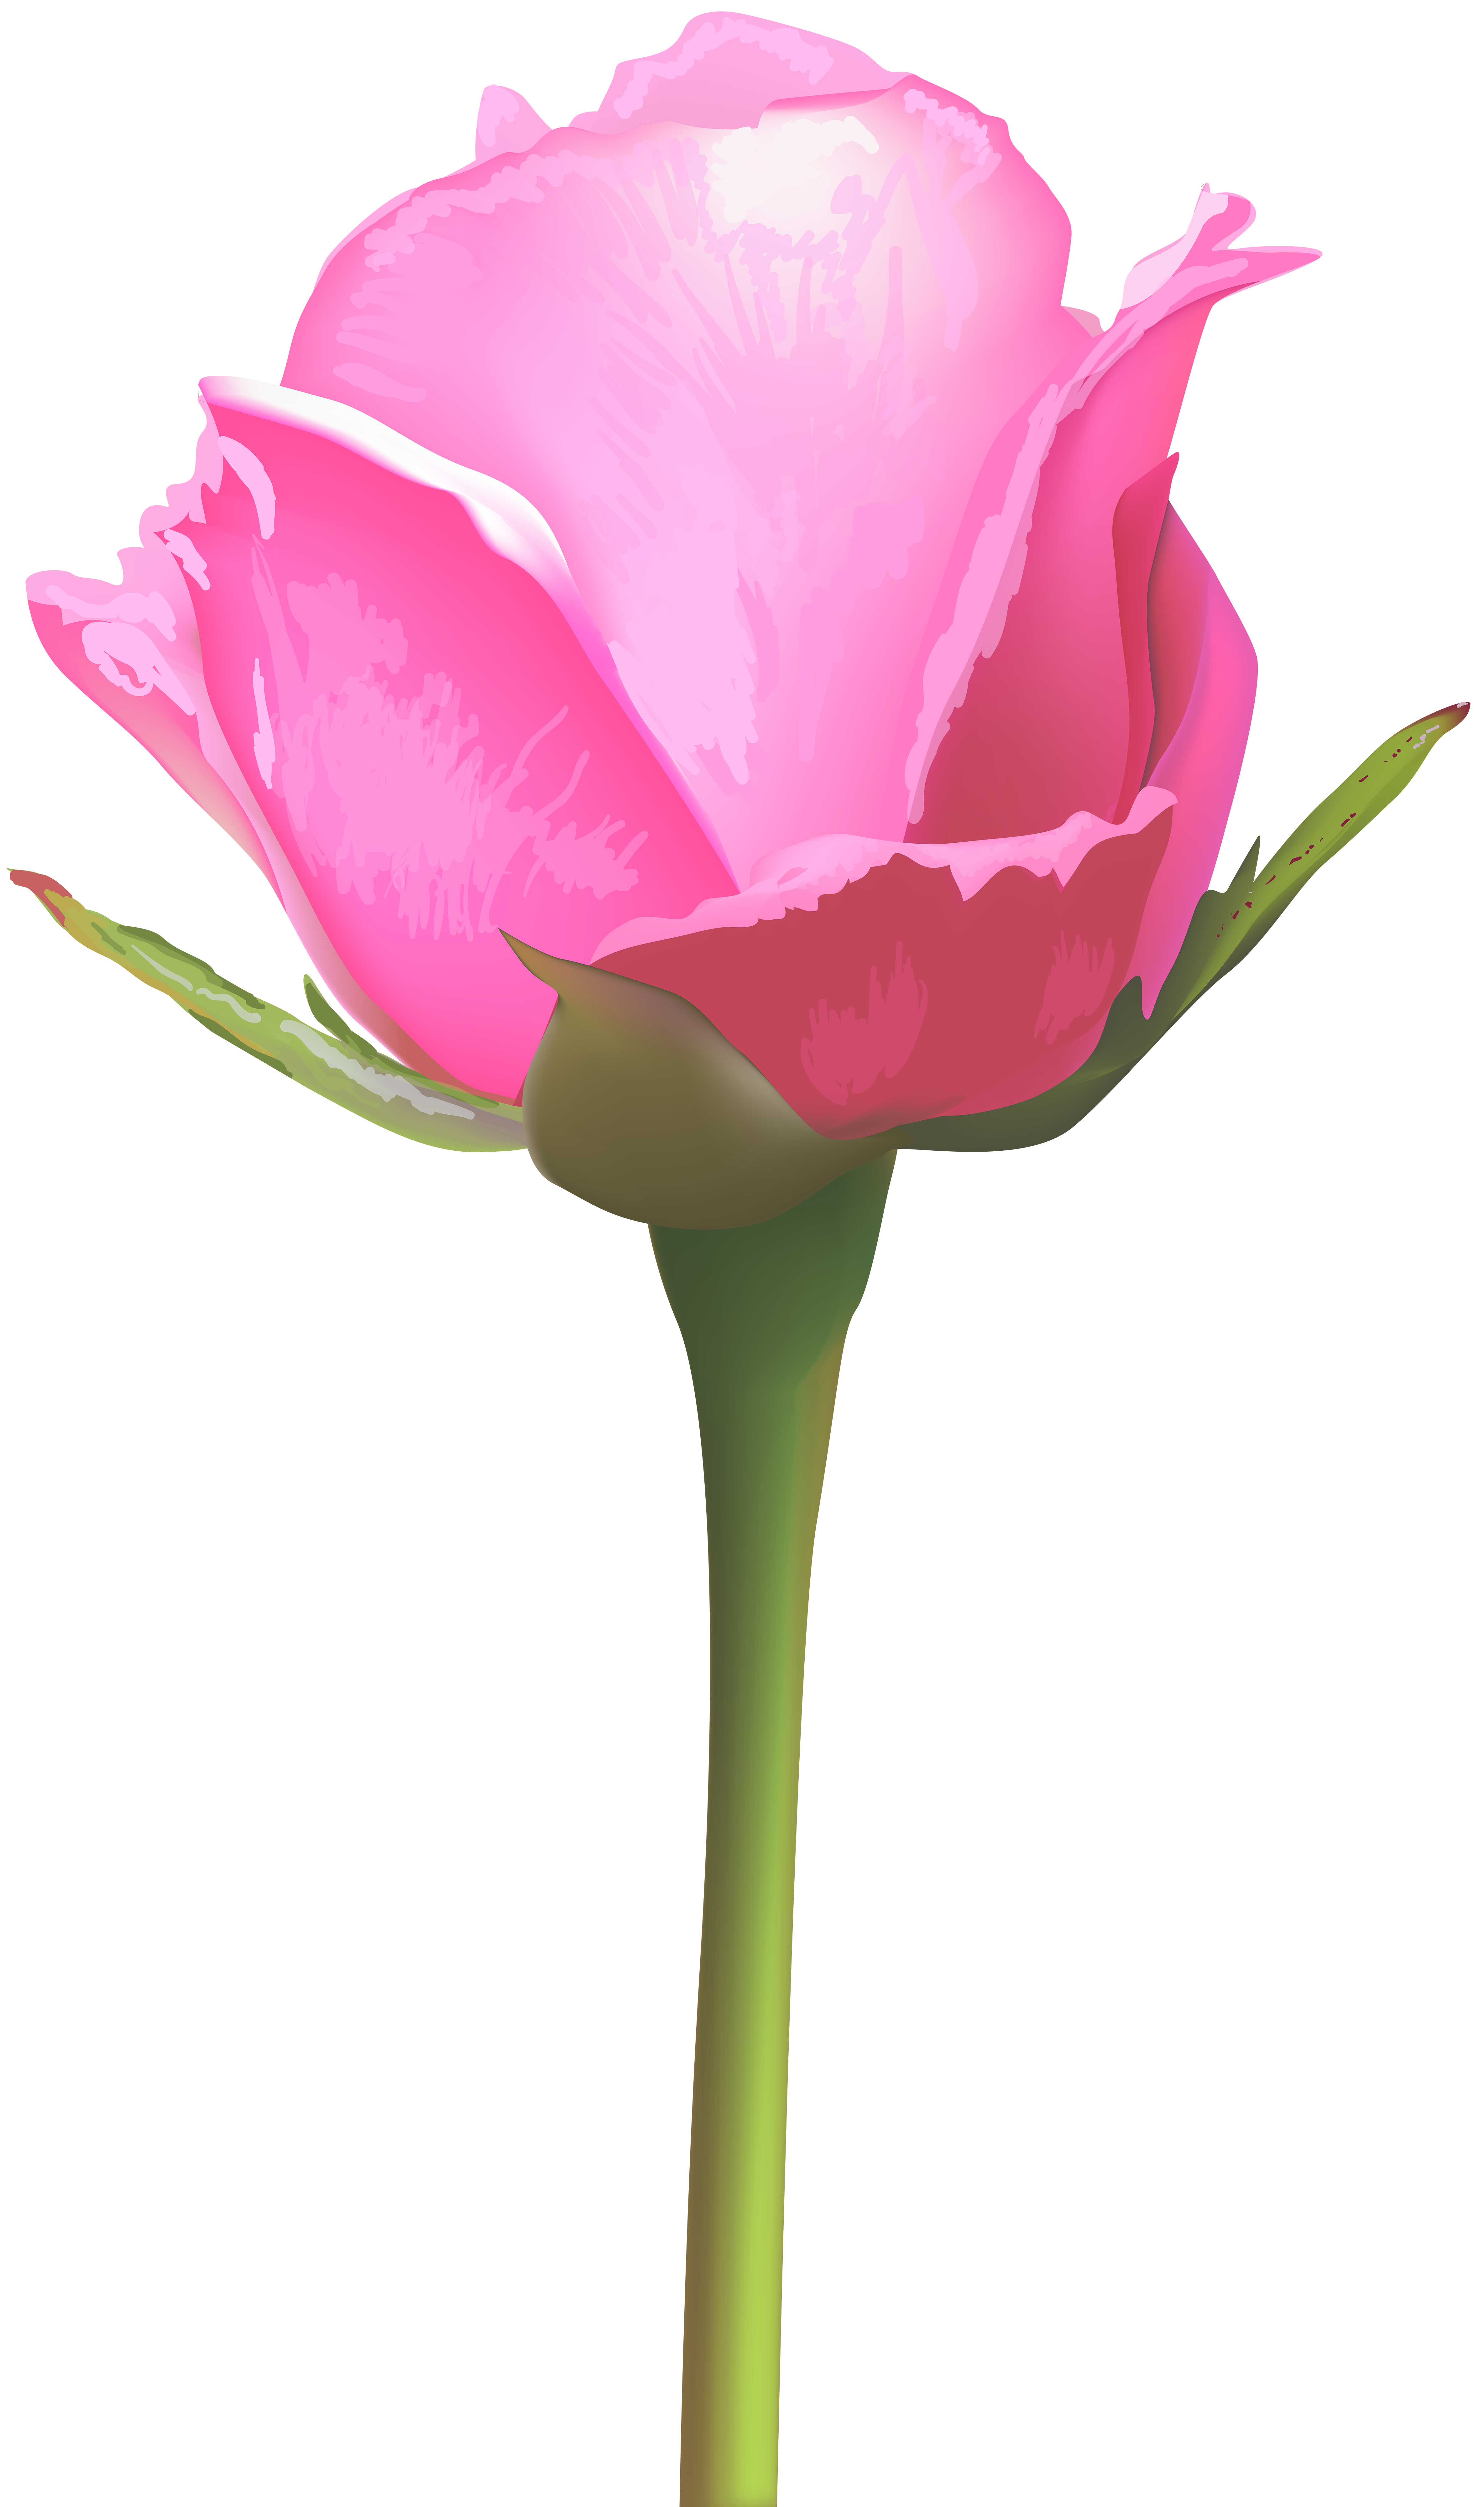 Single pink rose.